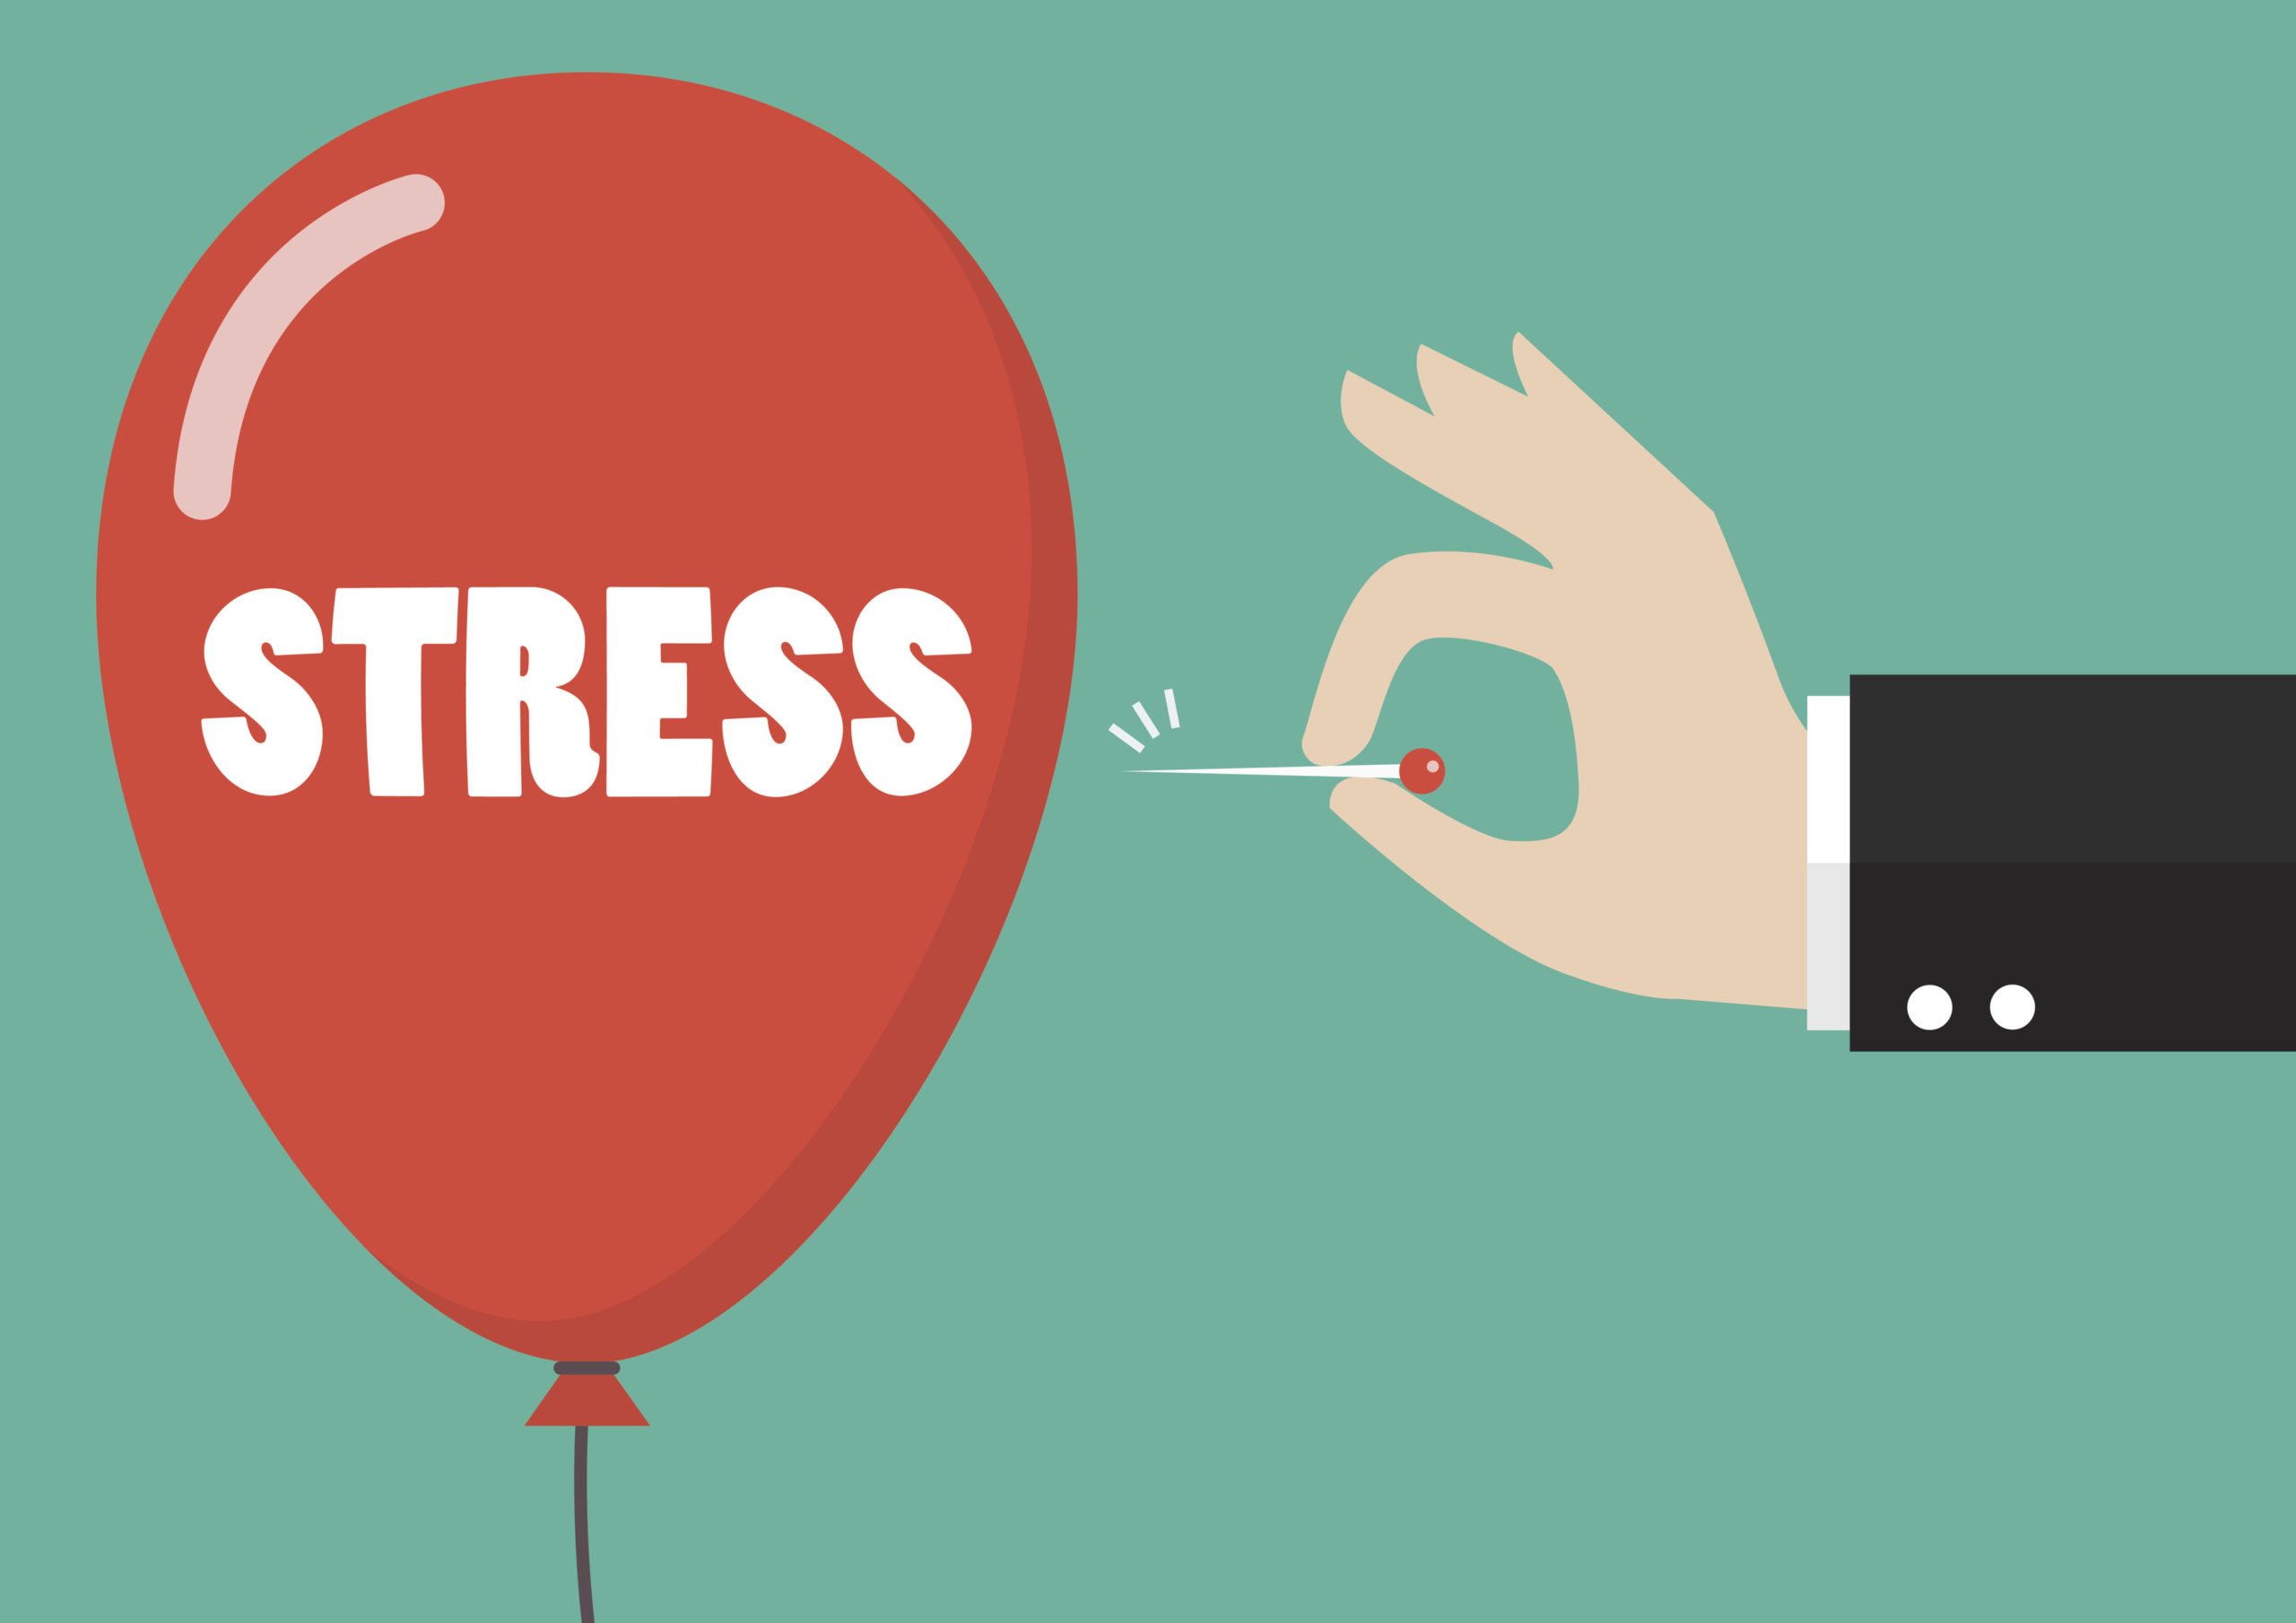 Un palloncino rosso rappresenta lo stress, che il bravo psicologo dissipa (forando metaforicamente il palloncino con un ago).